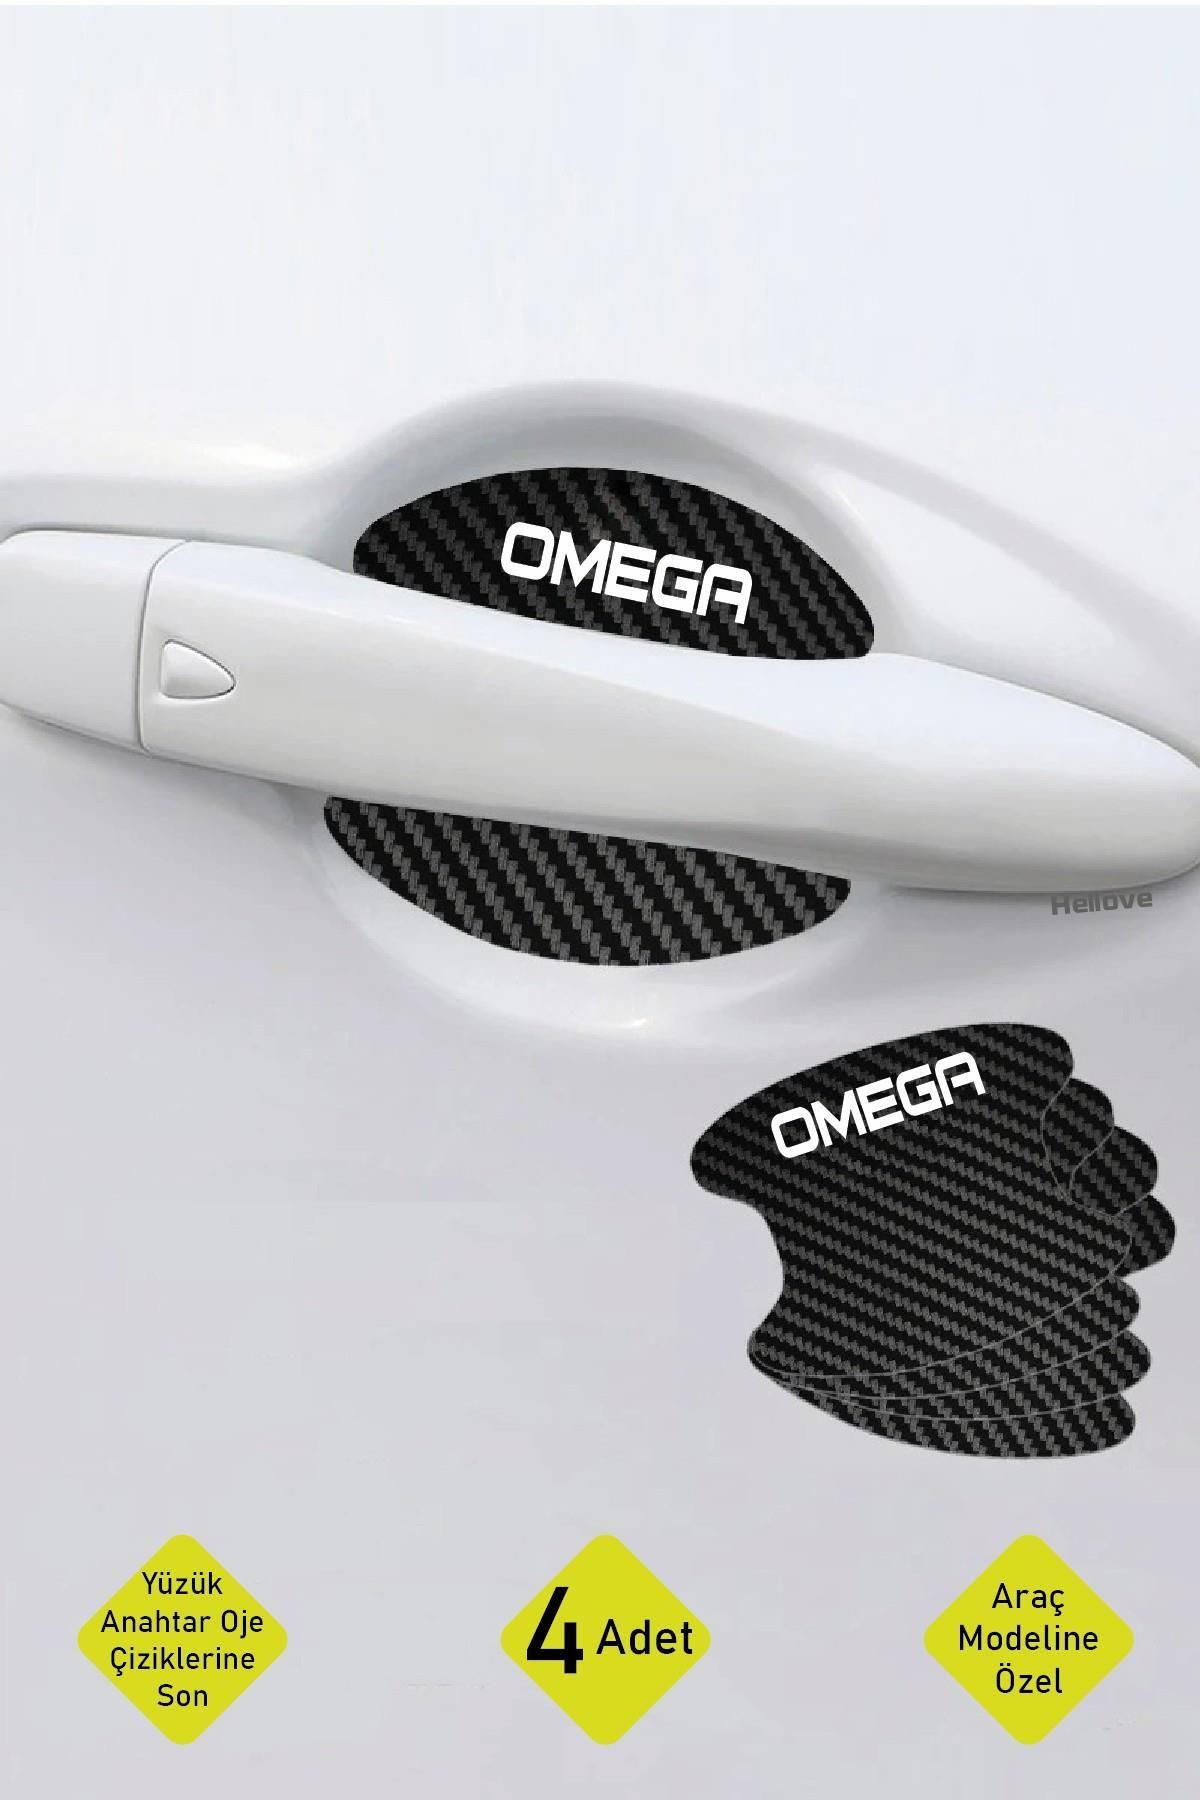 Hellove Oto Araç Kapı Kolu Koruyucu Boya Çizik Önleyici Karbon Opel Omega Uyumlu Beyaz Omega Yazılı